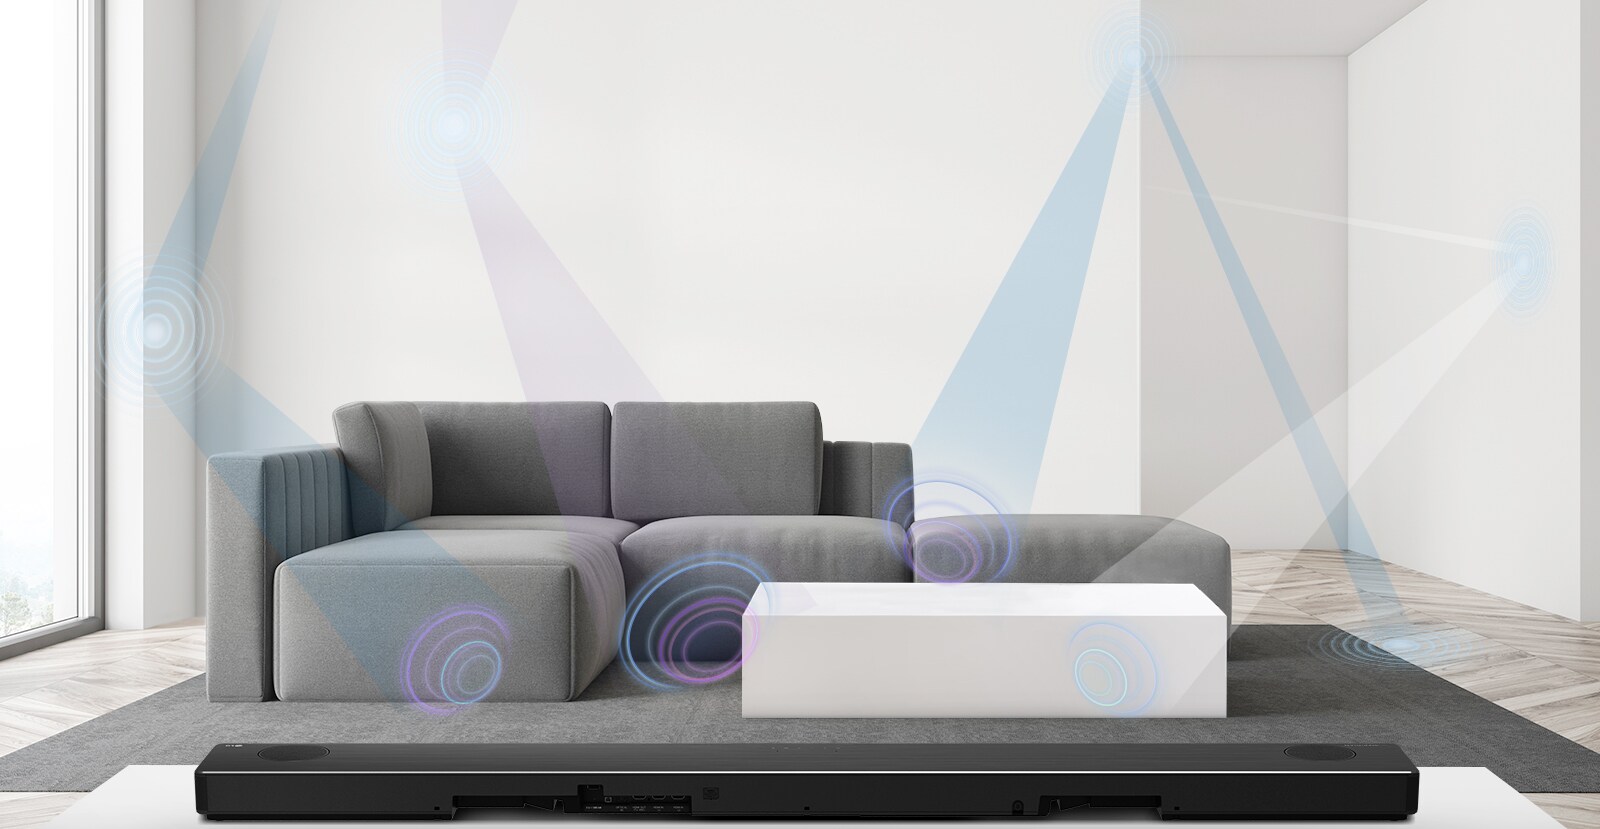 הצד האחורי של סאונד-בר של LG בסלון עם ספה אפורה במרכז. מוצגת גרפיקה של אורך גל המודד את החלל.